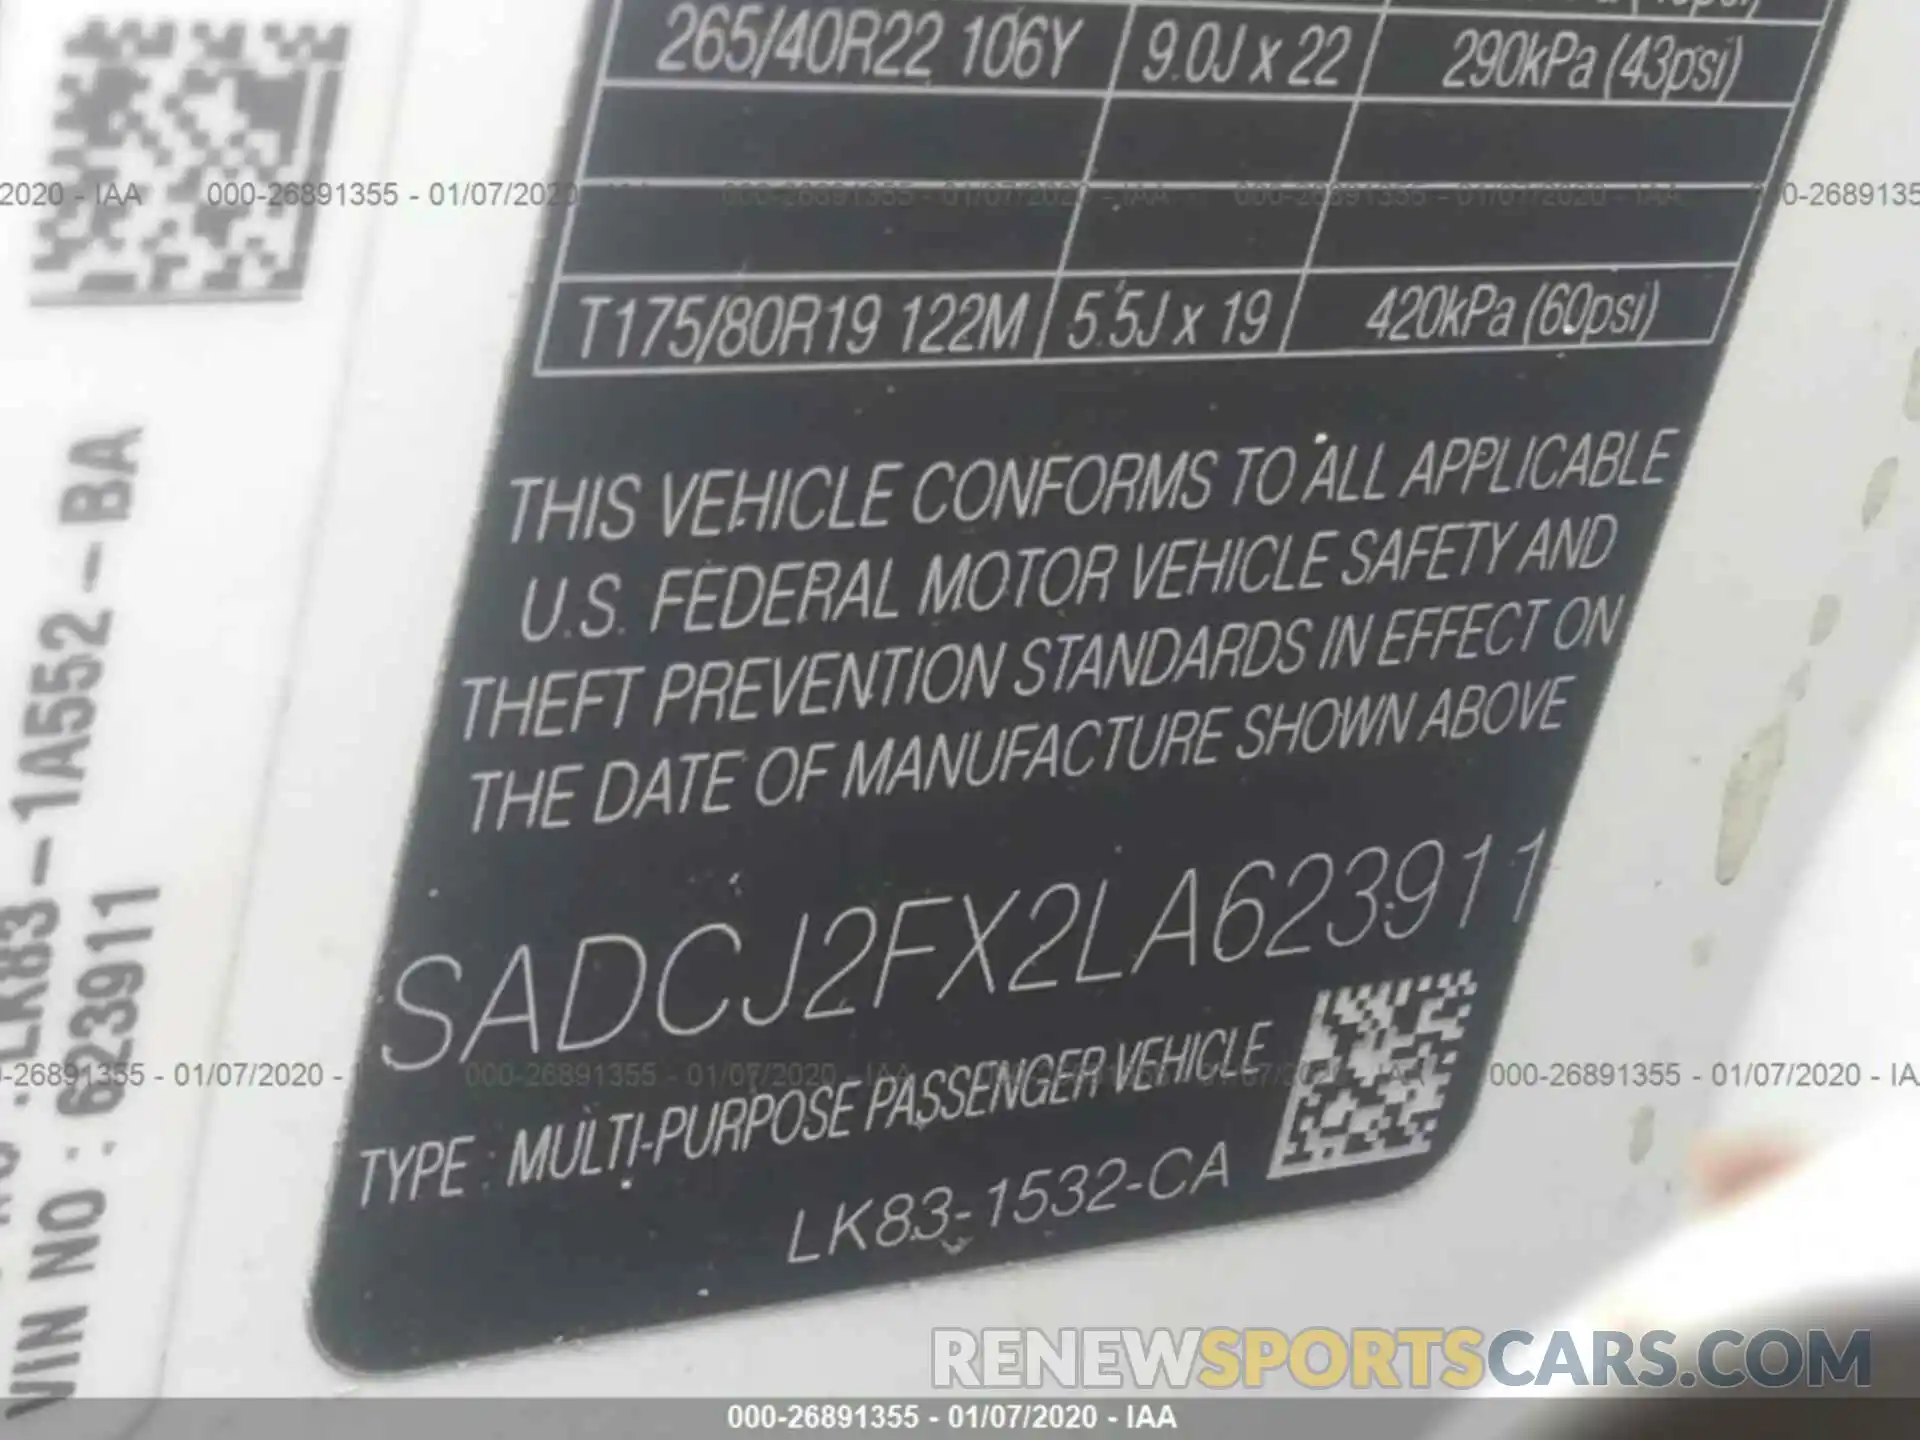 9 Photograph of a damaged car SADCJ2FX2LA623911 JAGUAR F-PACE 2020